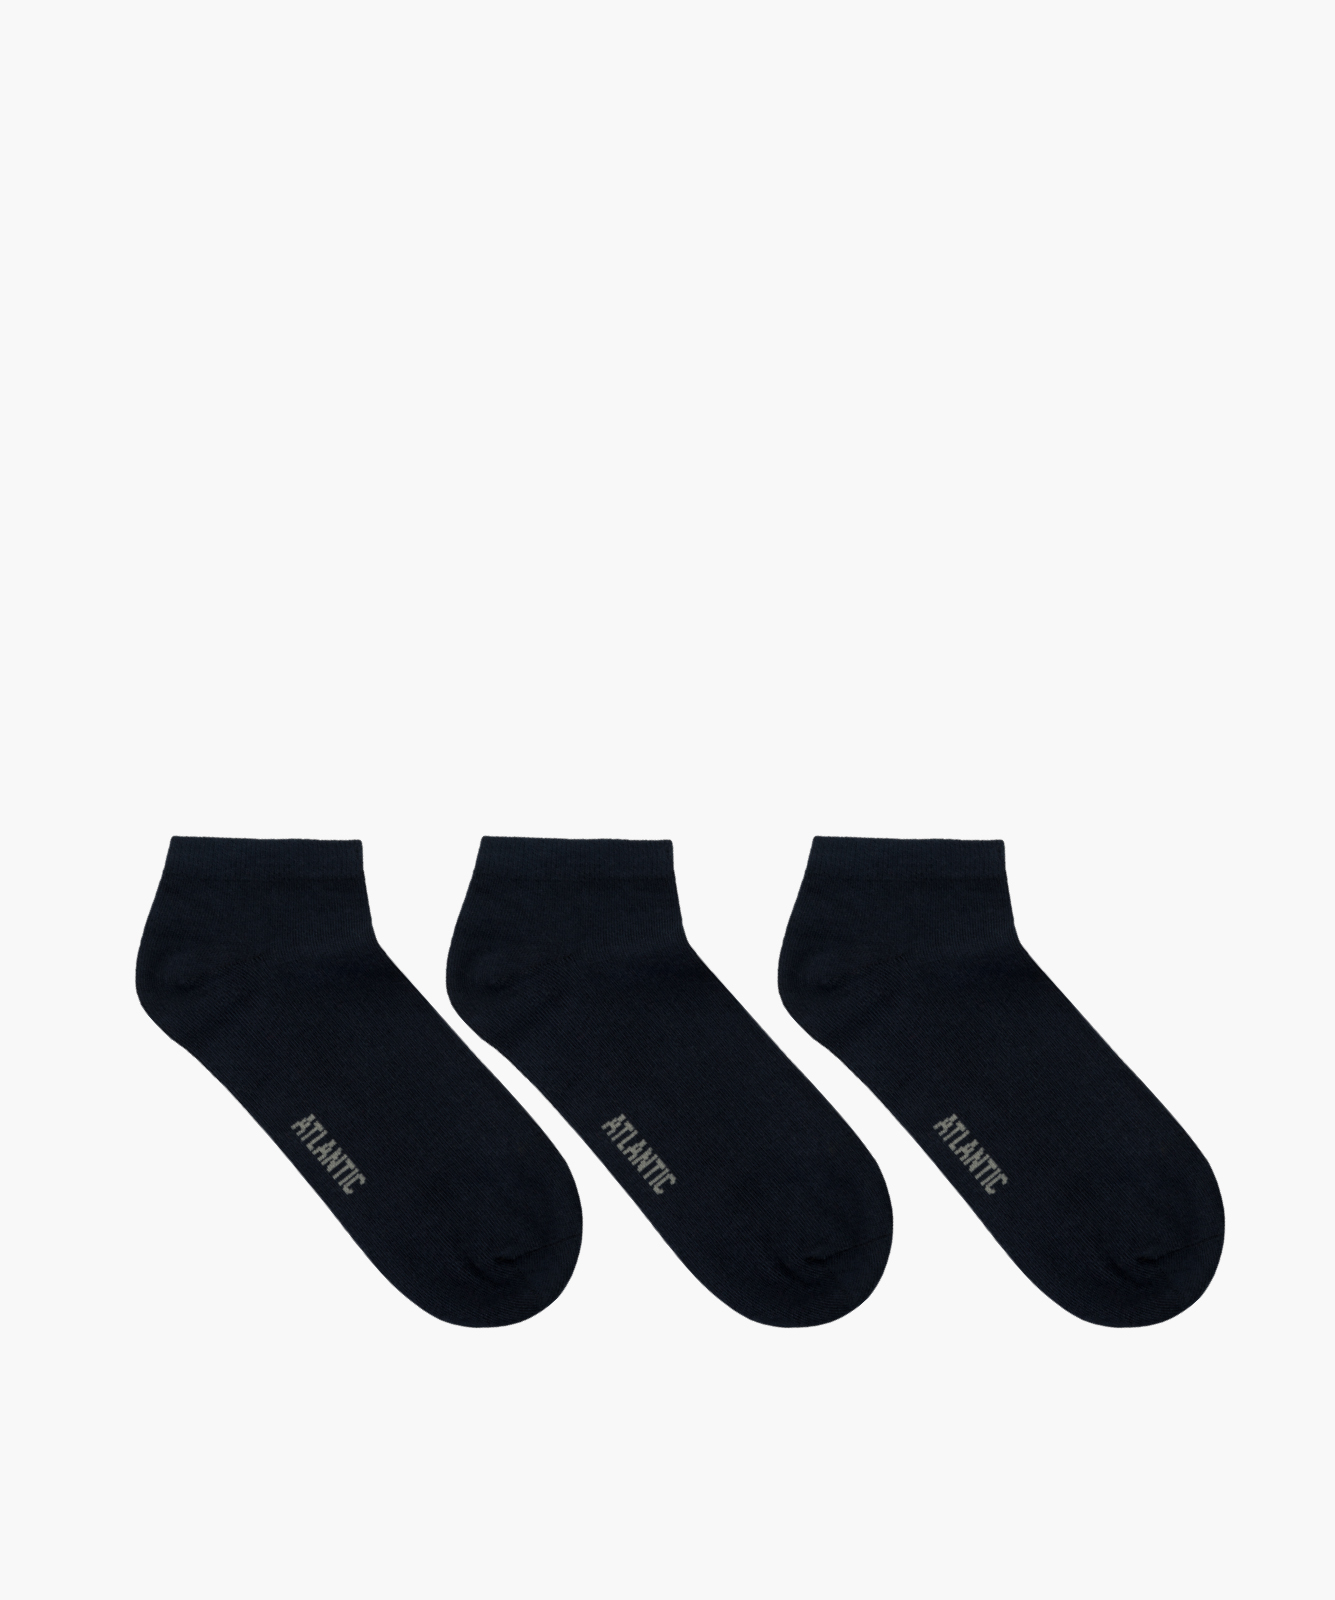 Men's socks 3Pack - dark blue